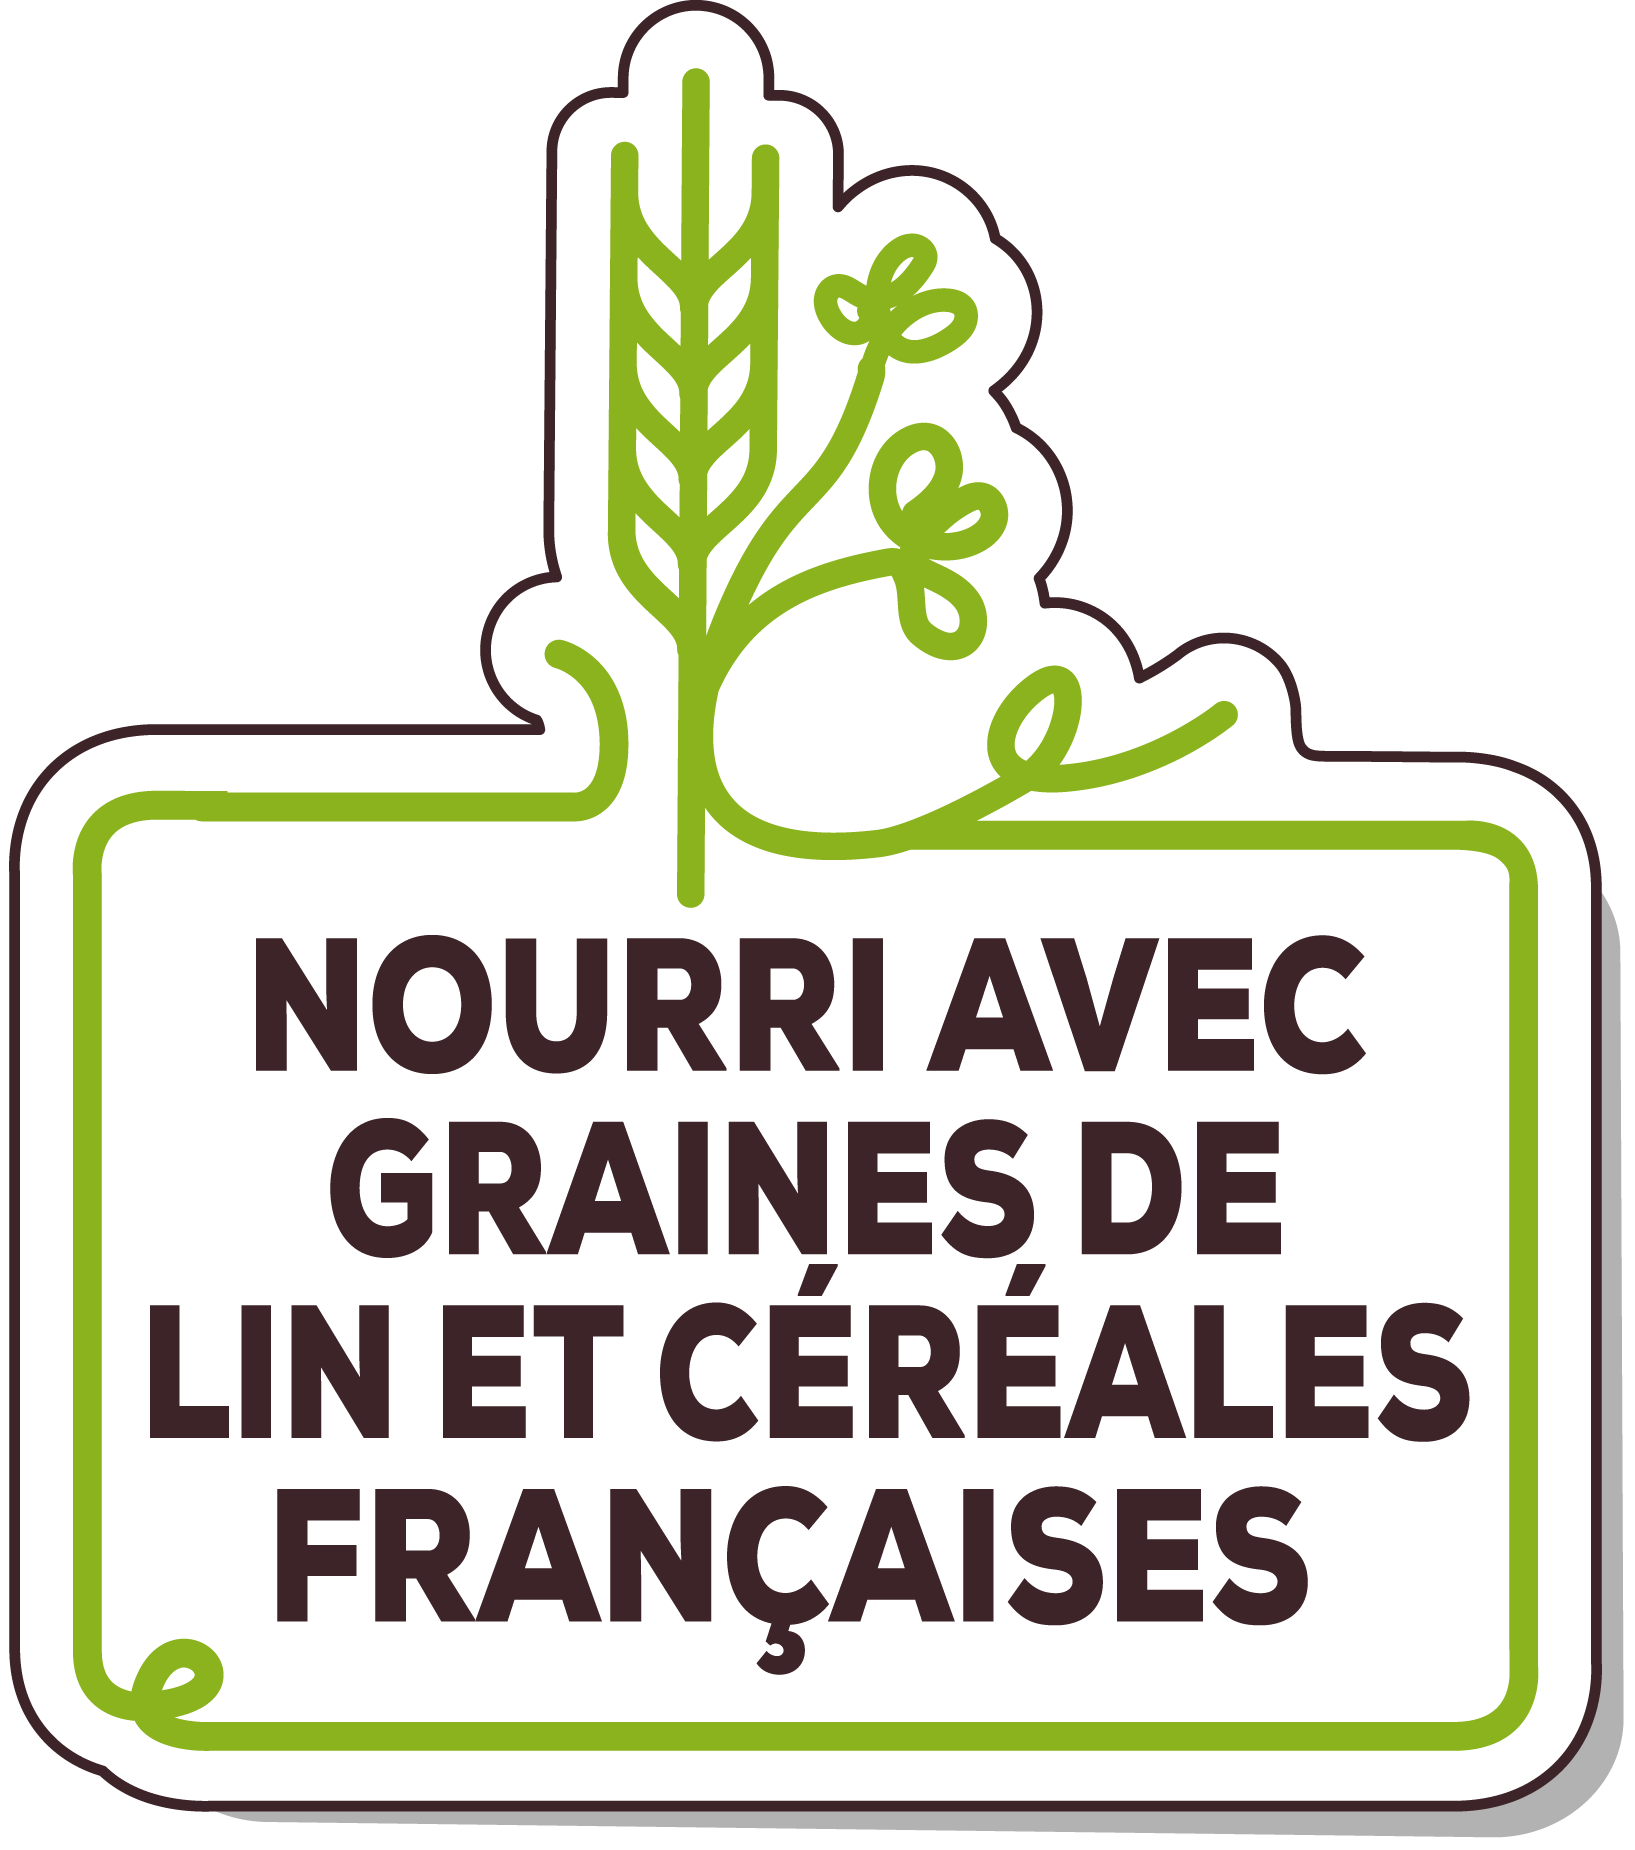 nourri avec graines de lin et céréales françaises